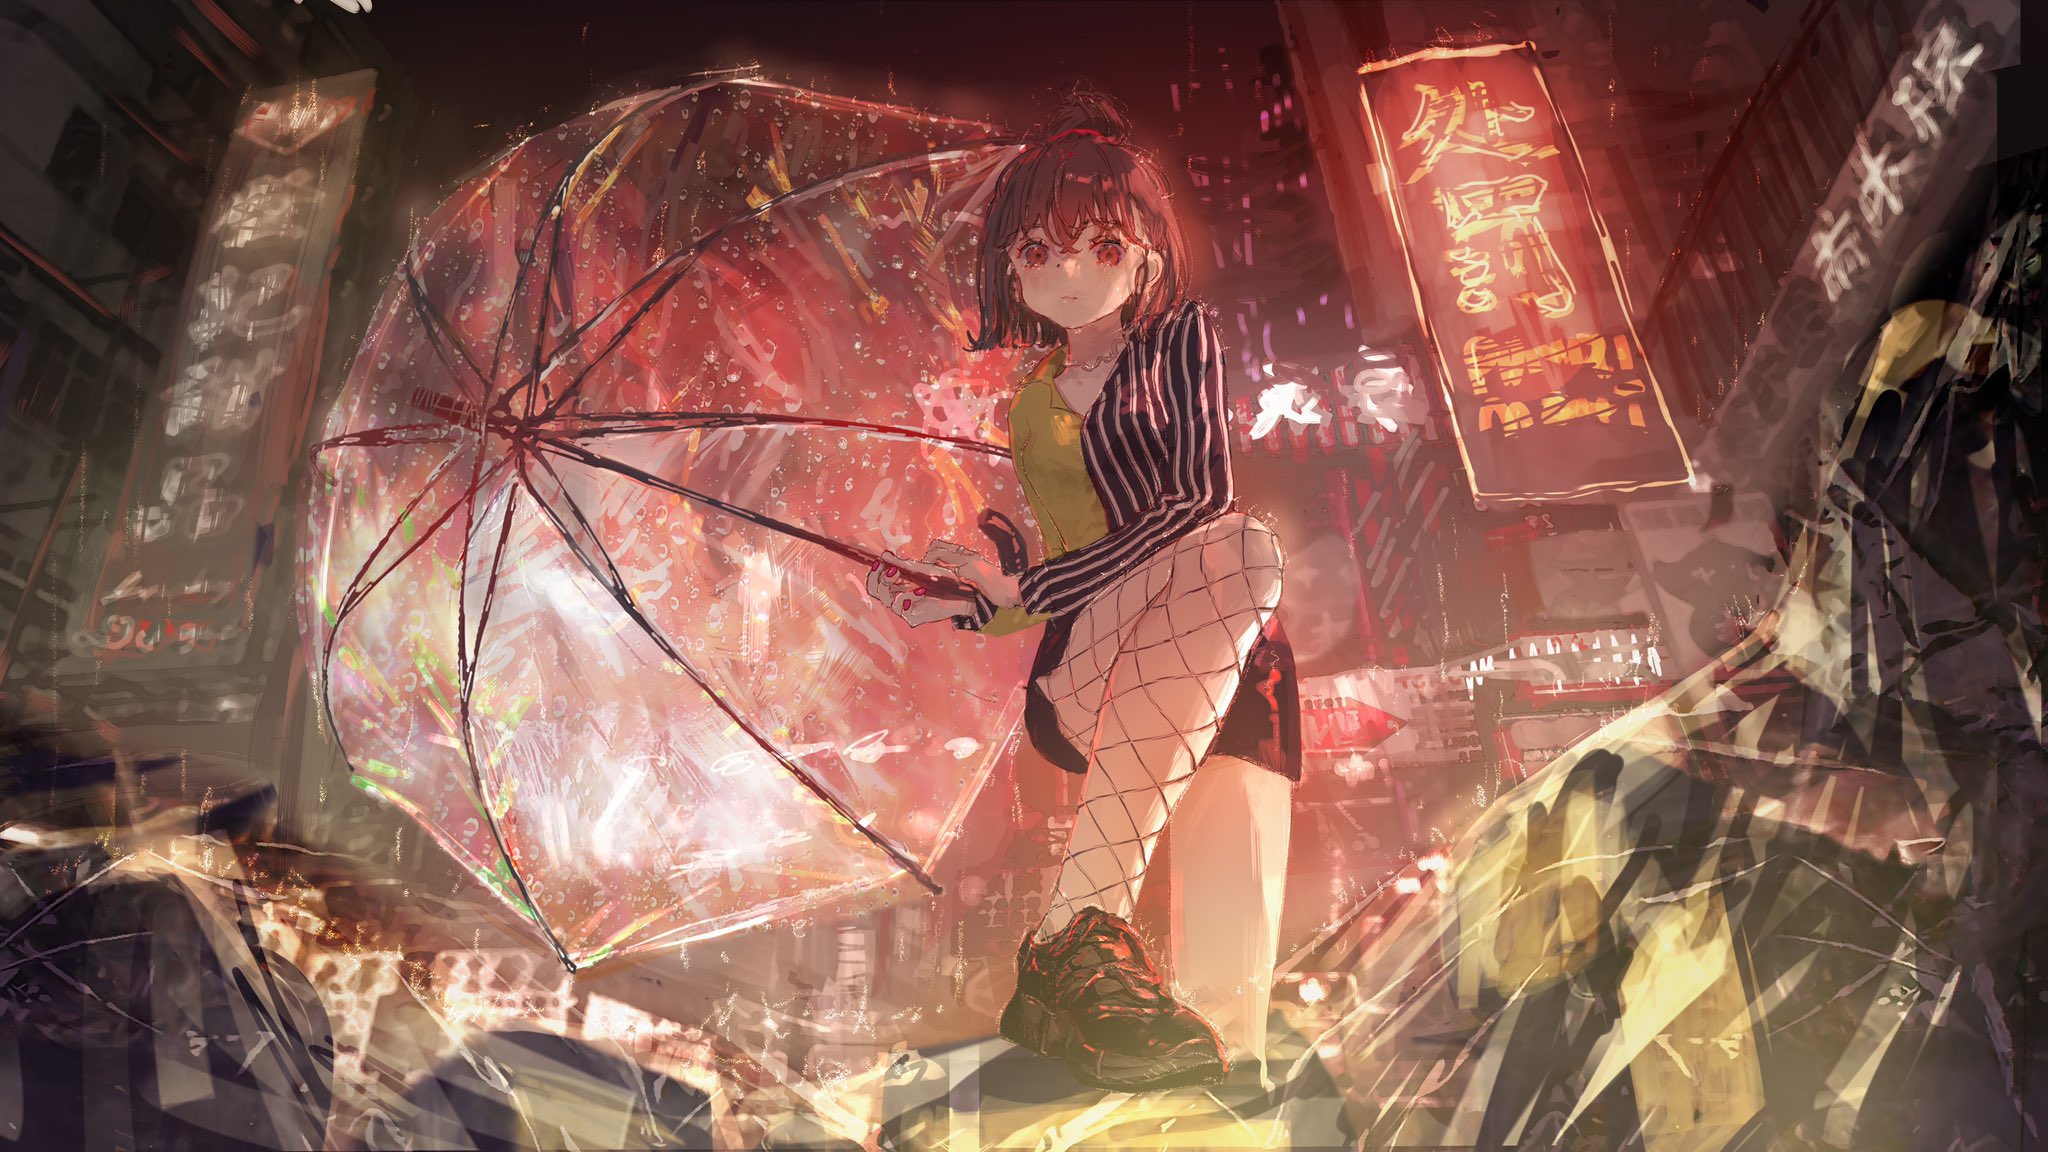 Anime 2048x1152 anime anime girls digital art artwork 2D portrait Roki city night rain umbrella low-angle short hair brunette